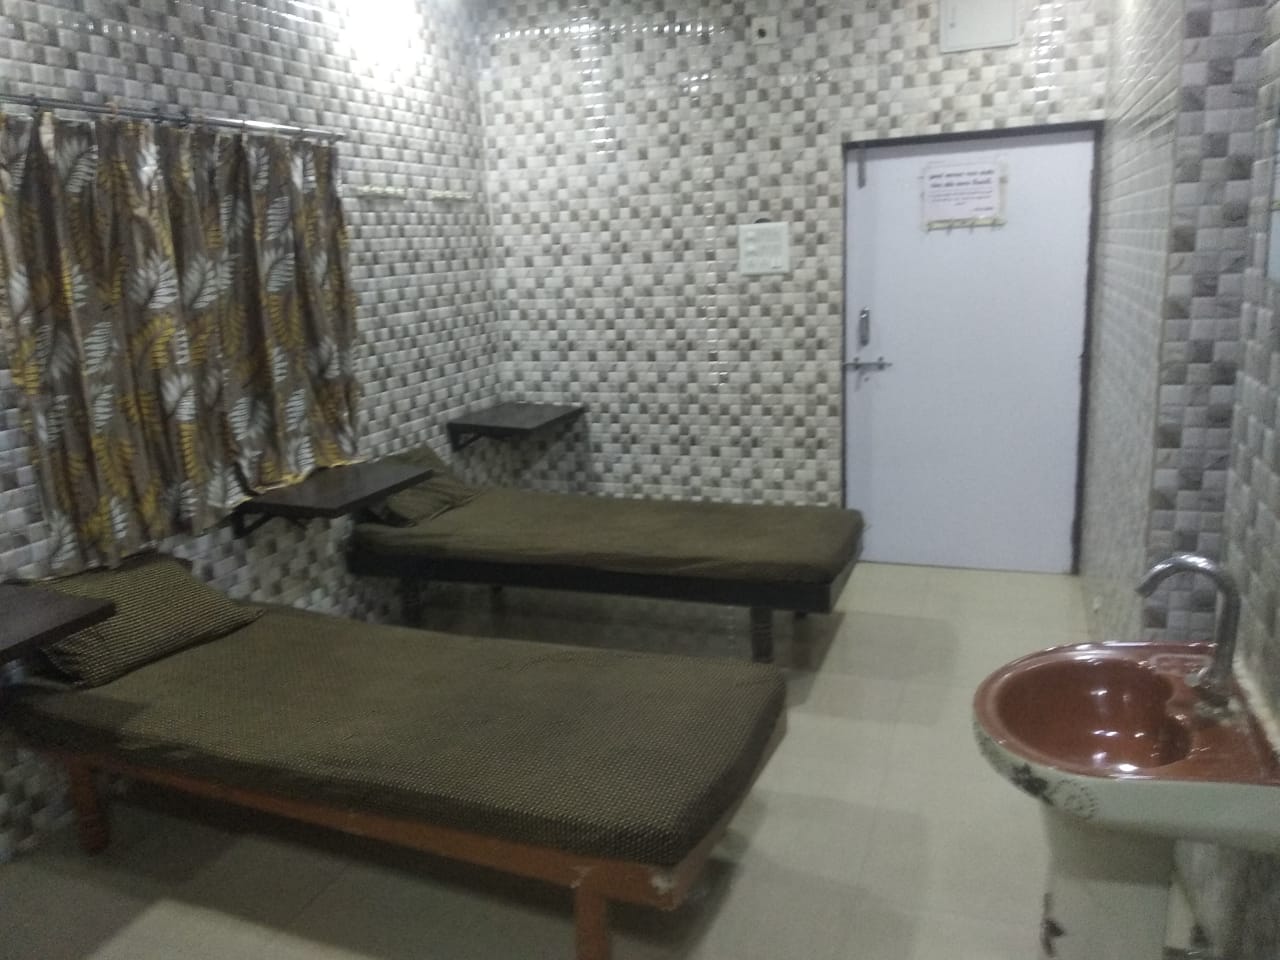 Hostel for Working Men In Rajkot